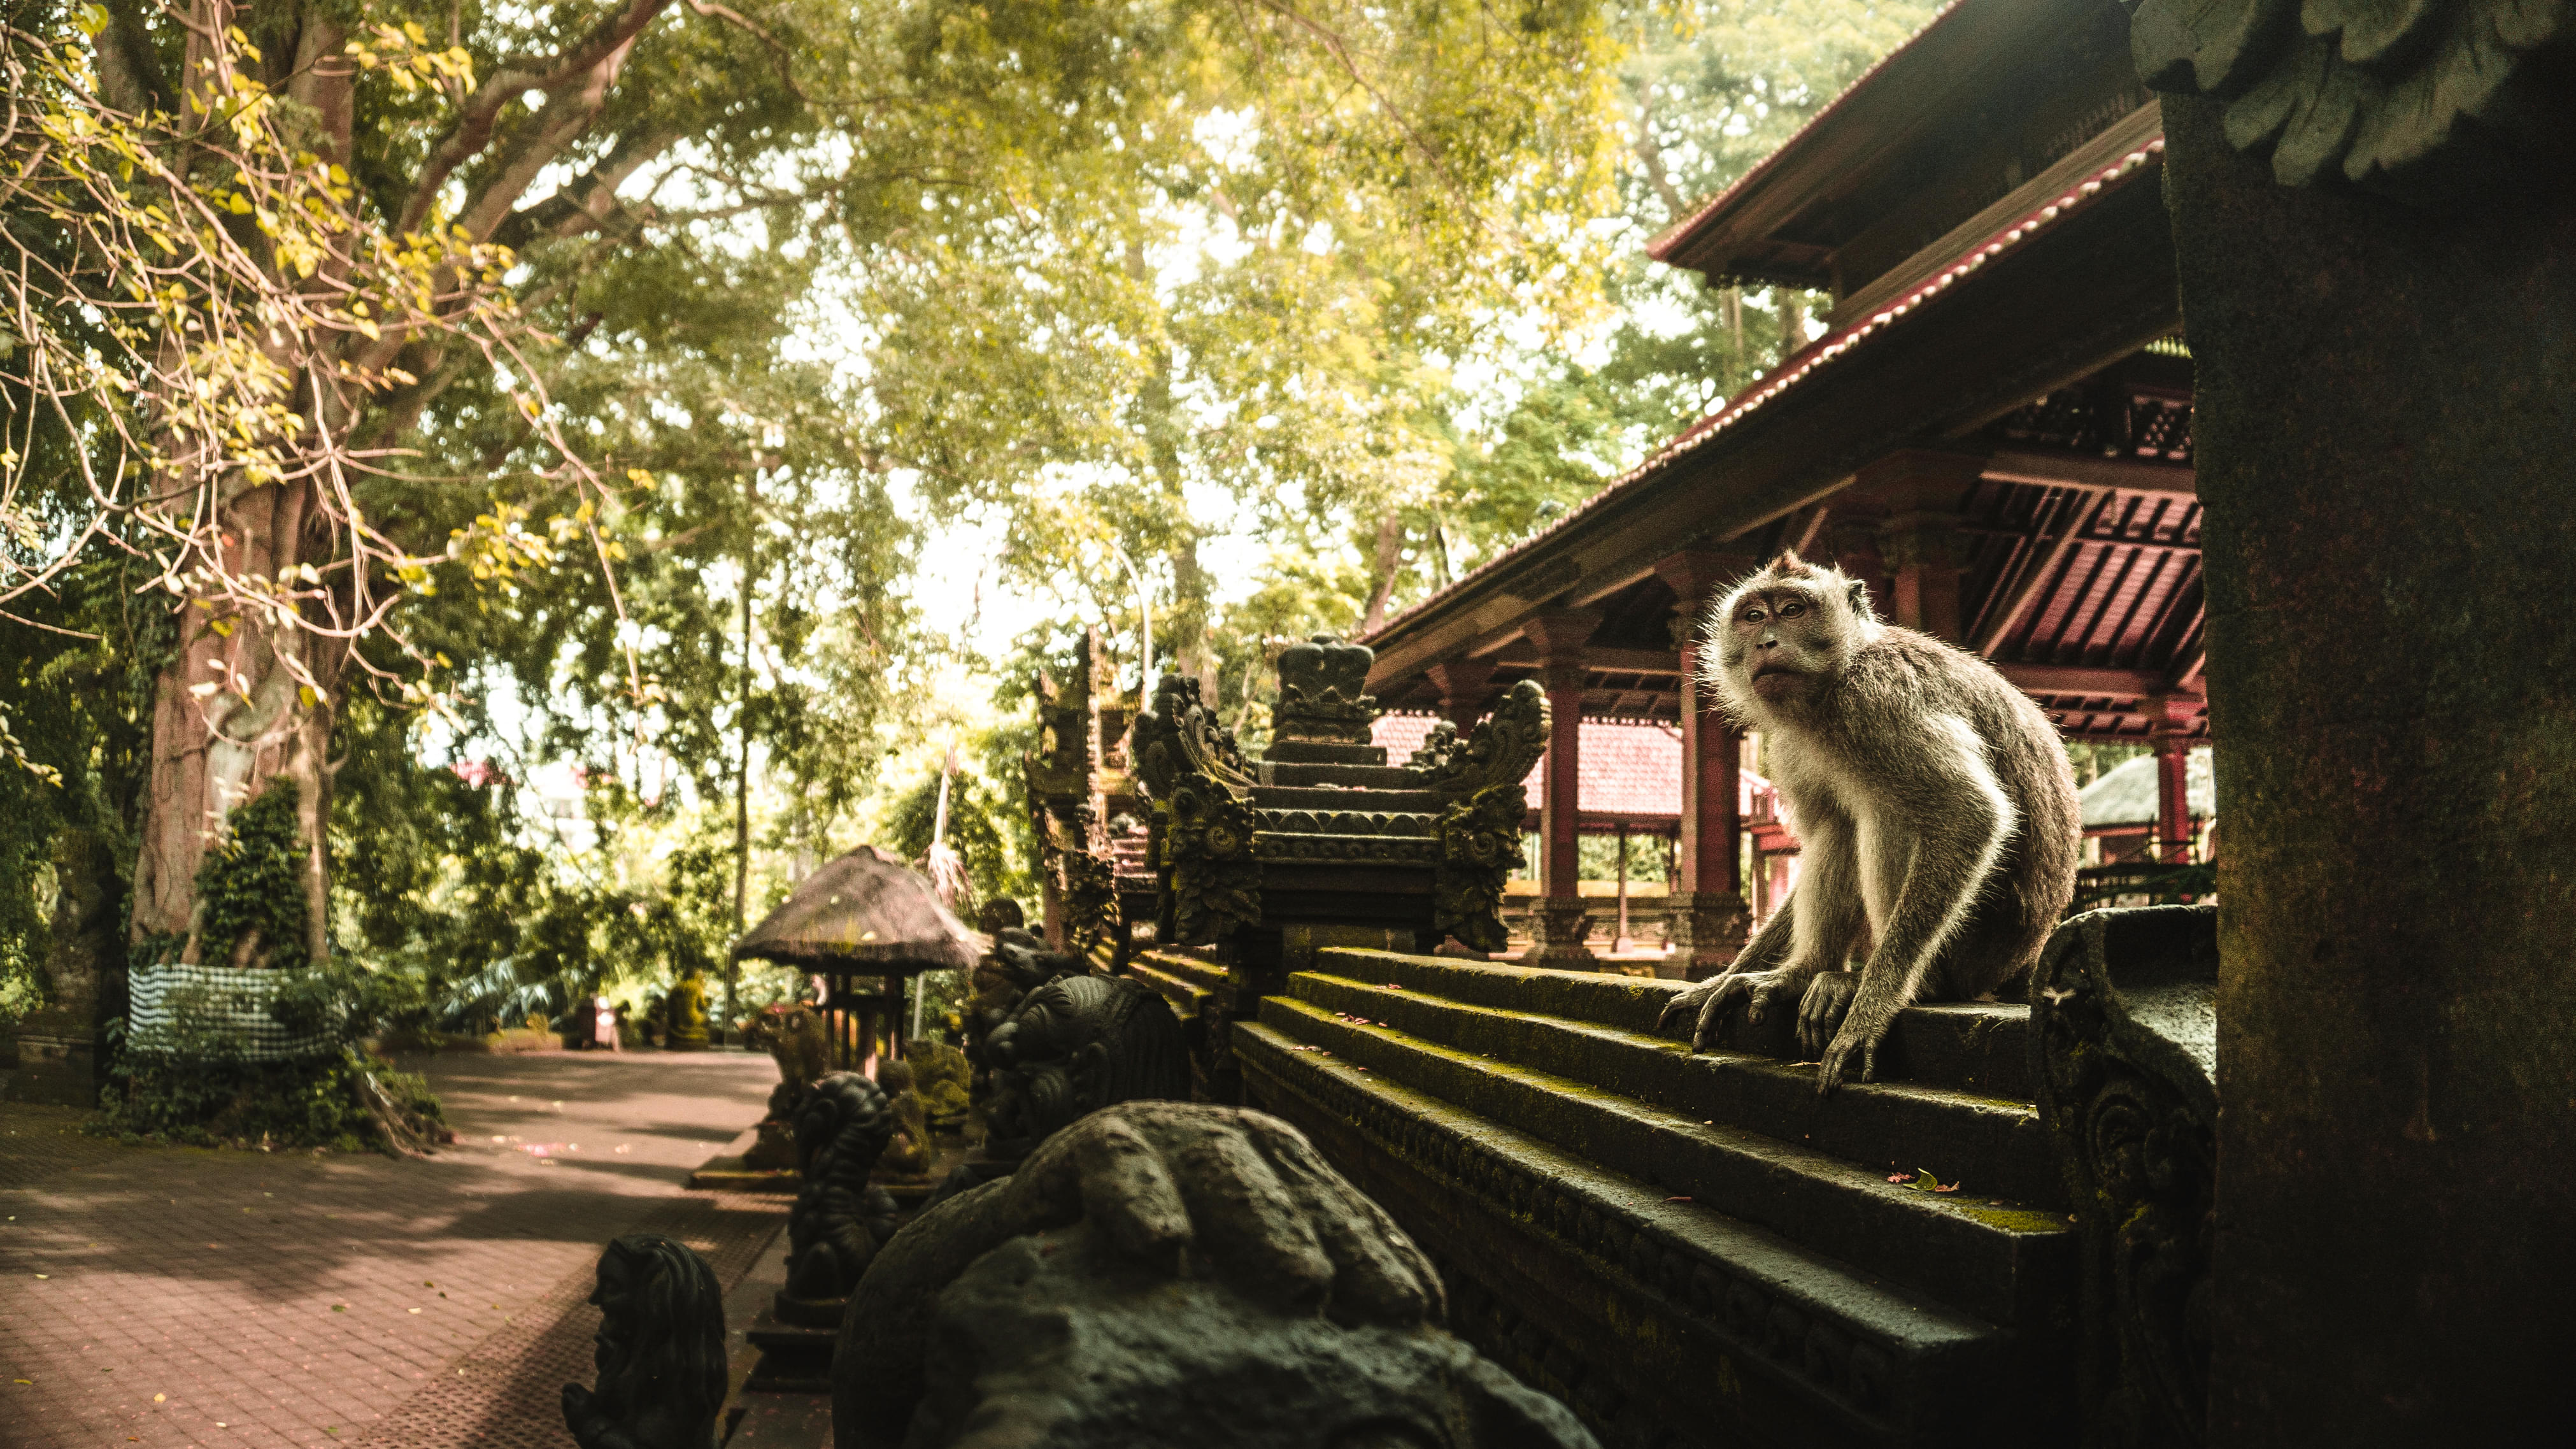  Ubud Monkey Forest